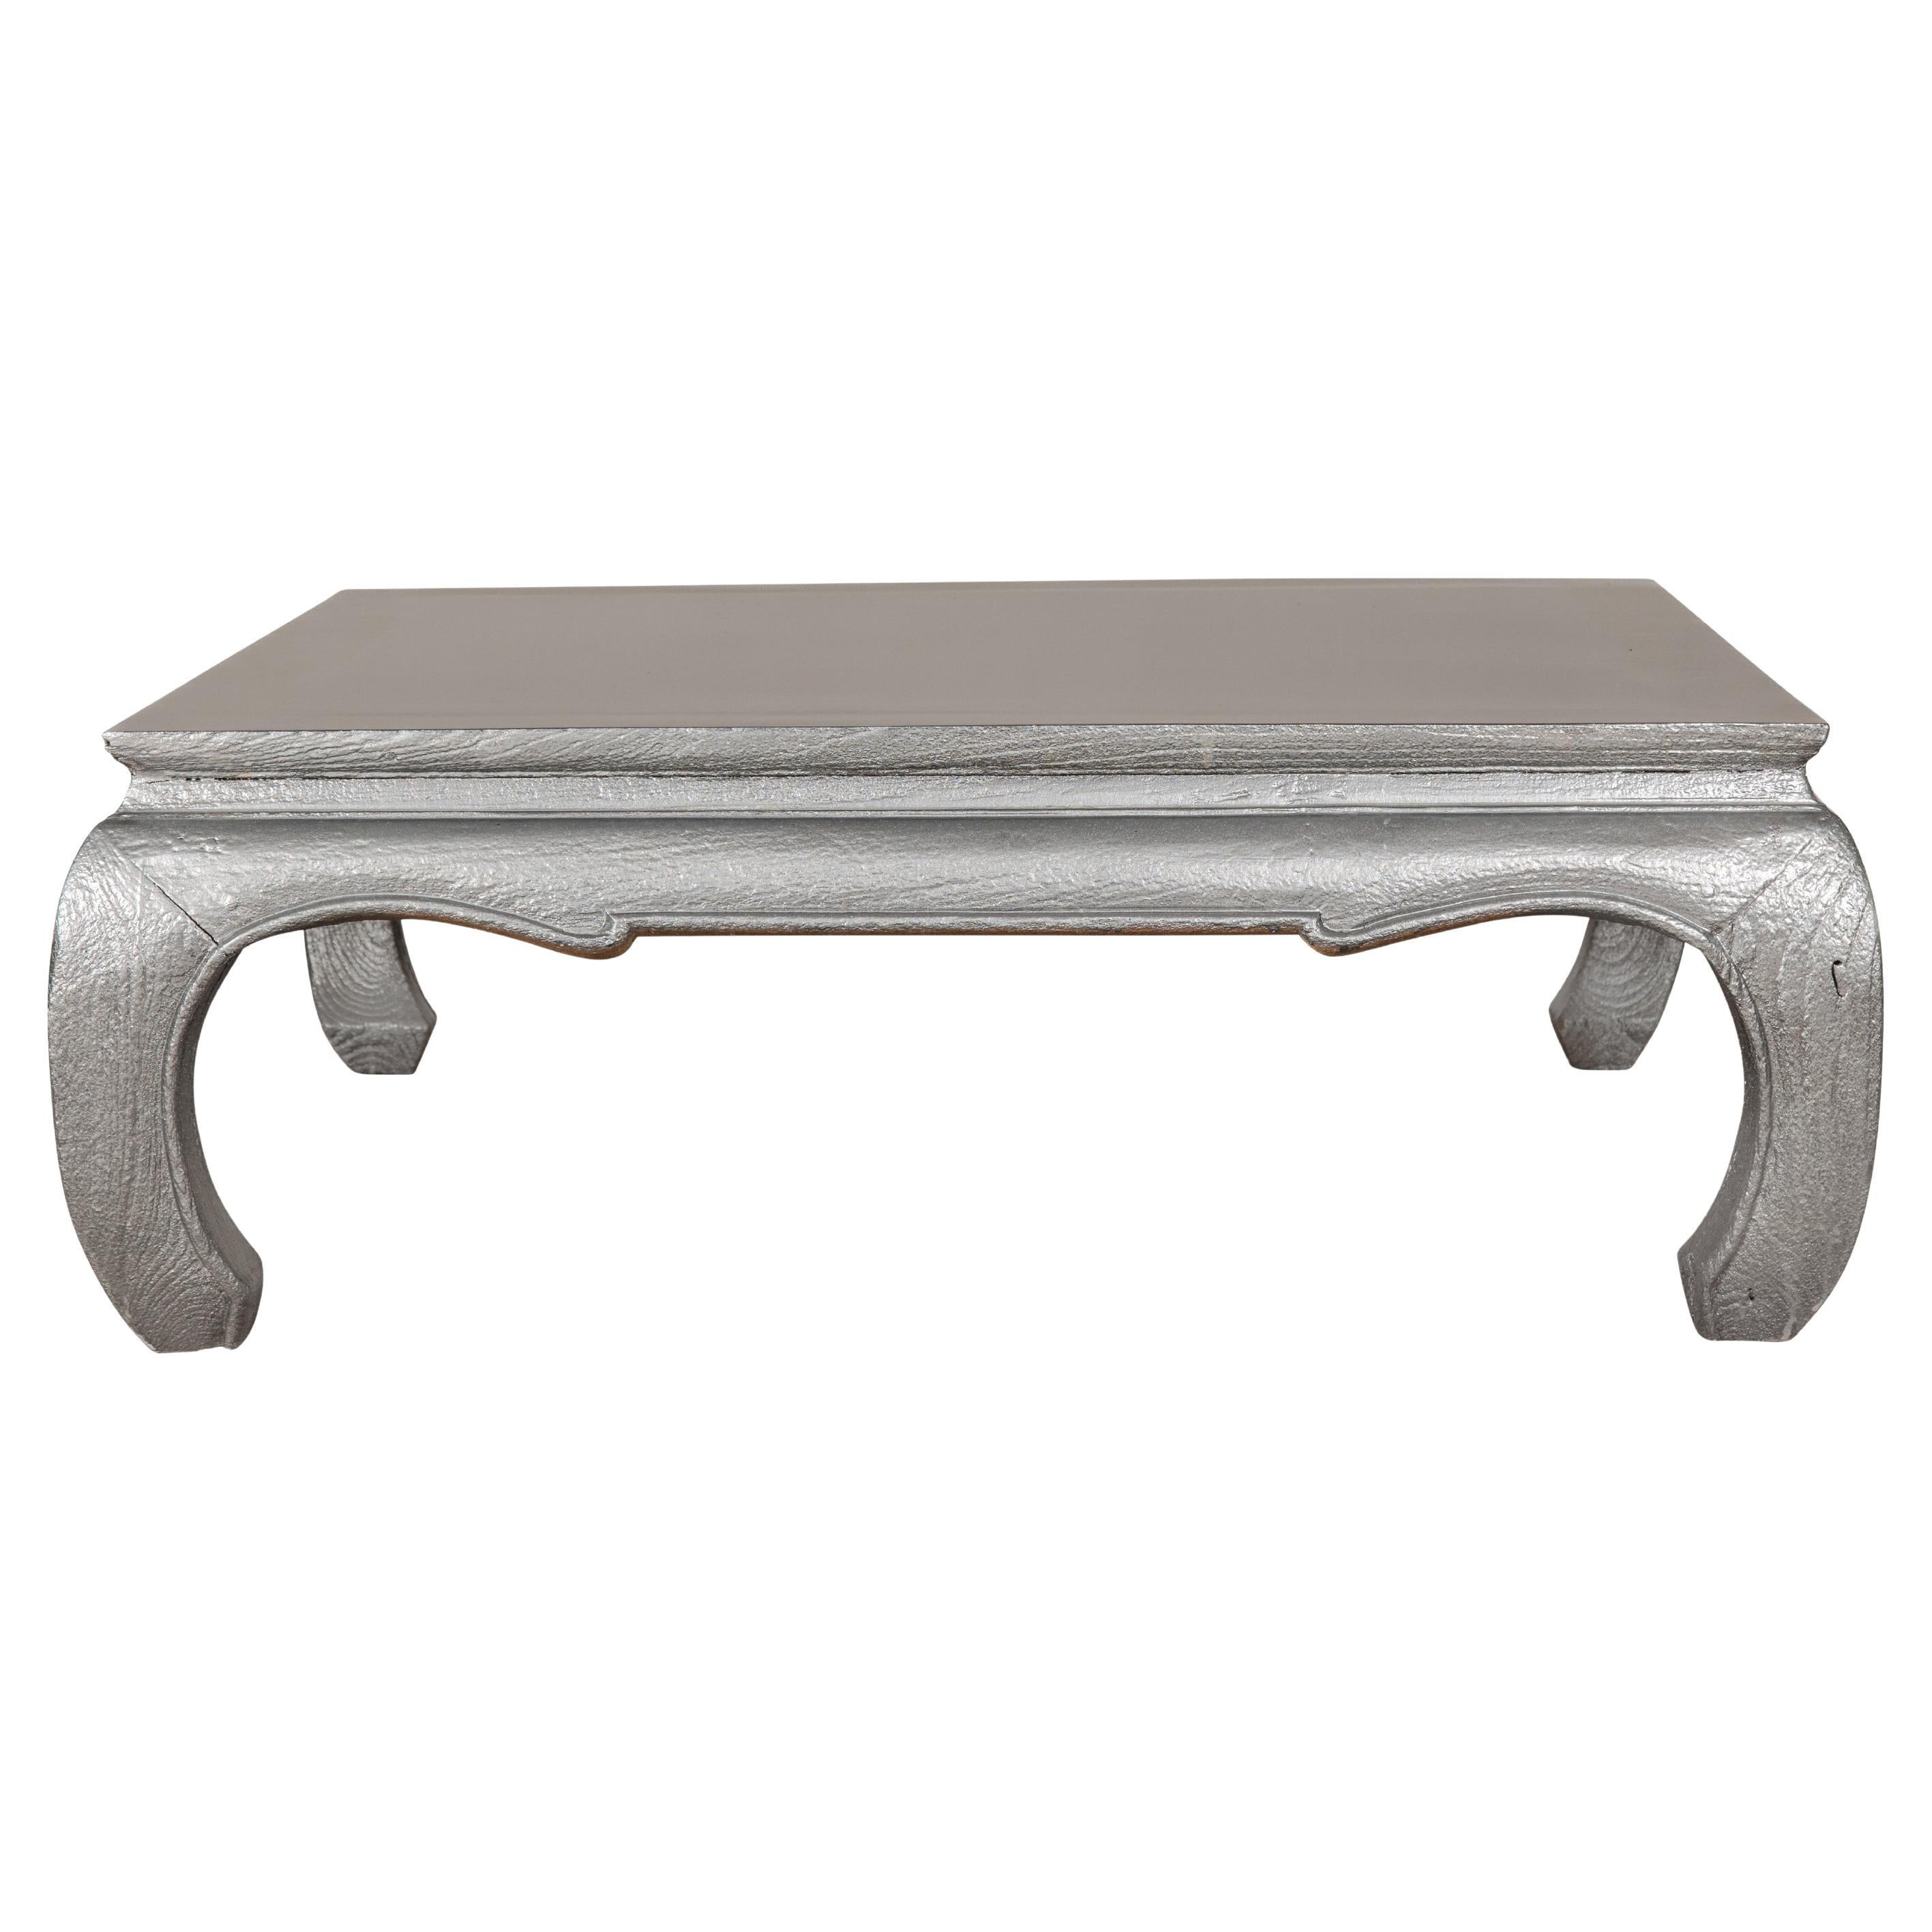 Table basse en teck avec patine Silver personnalisée, pieds Chow et tablier sculpté